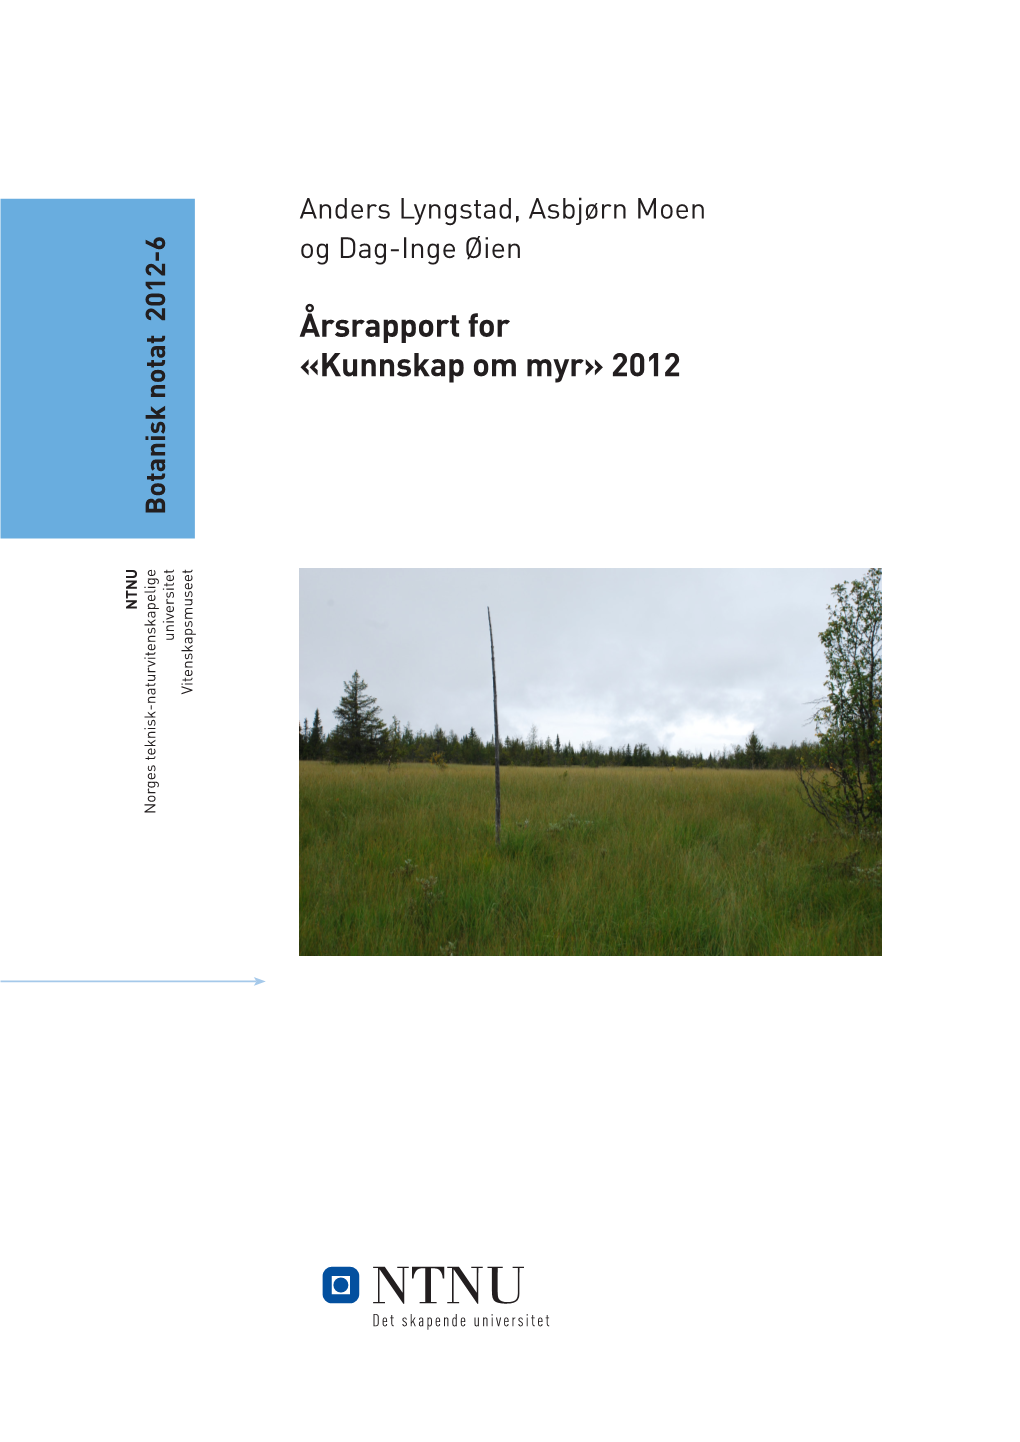 Årsrapport for «Kunnskap Om Myr» 2012